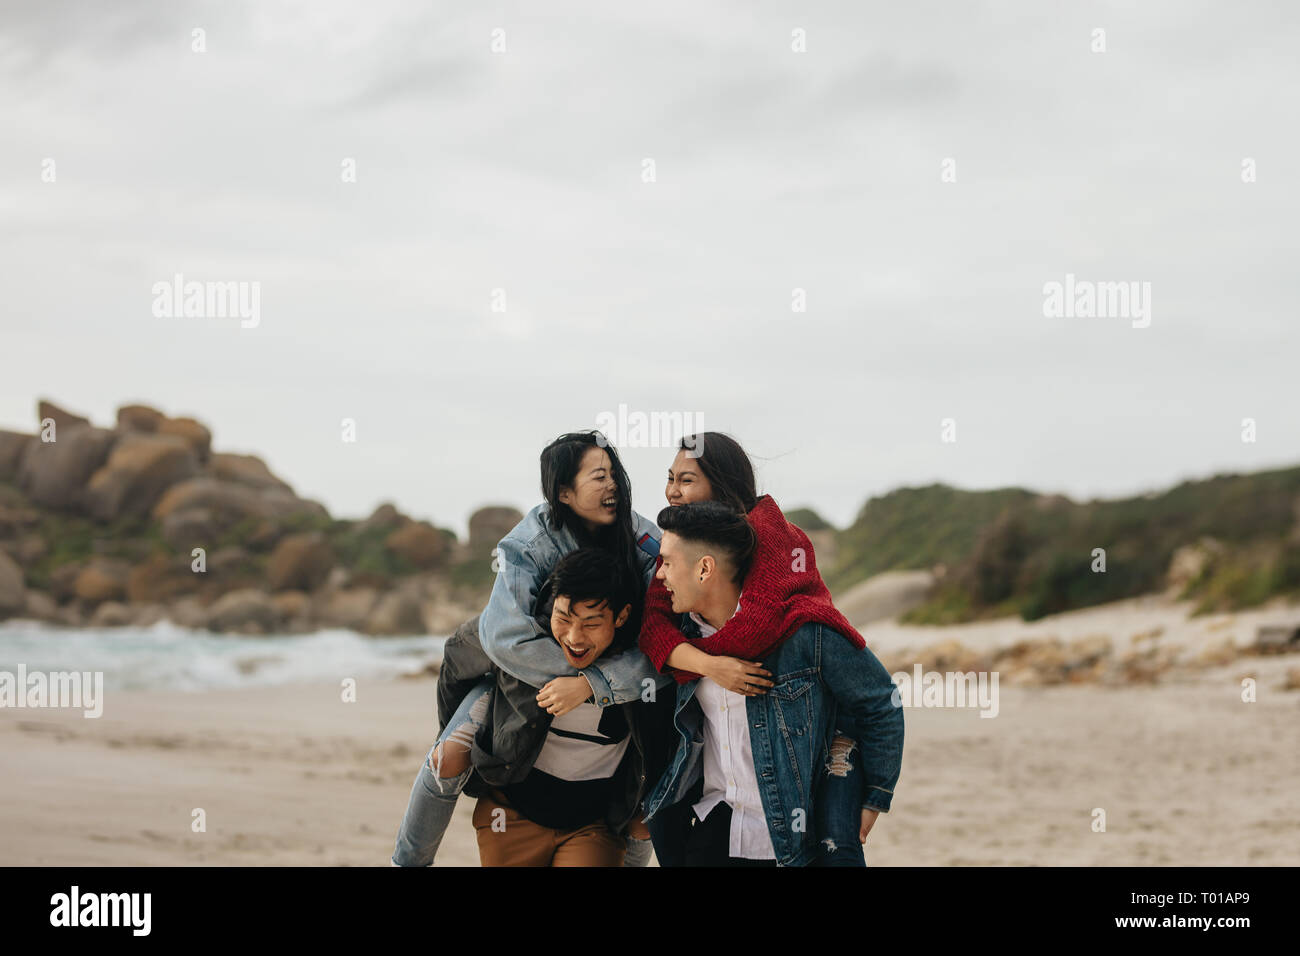 Junge asiatische Männer, die Frauen, die Freunde auf dem Rücken am Strand. Gruppe von Freunden huckepack draußen auf dem Meer. Stockfoto